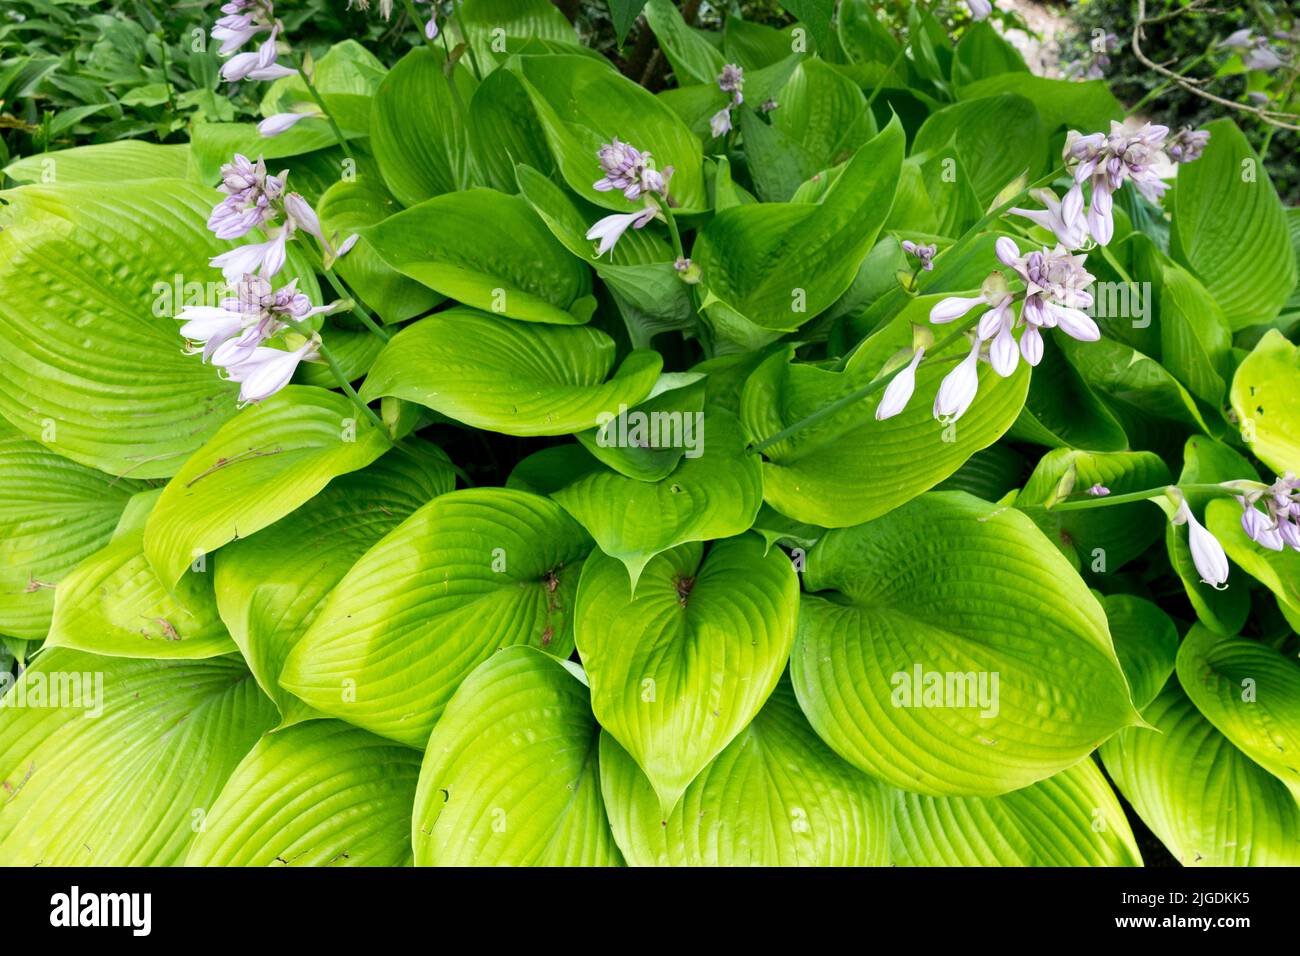 Groß, Blätter, Hosta 'Summe und Substanz', Blühen im Garten Stockfoto